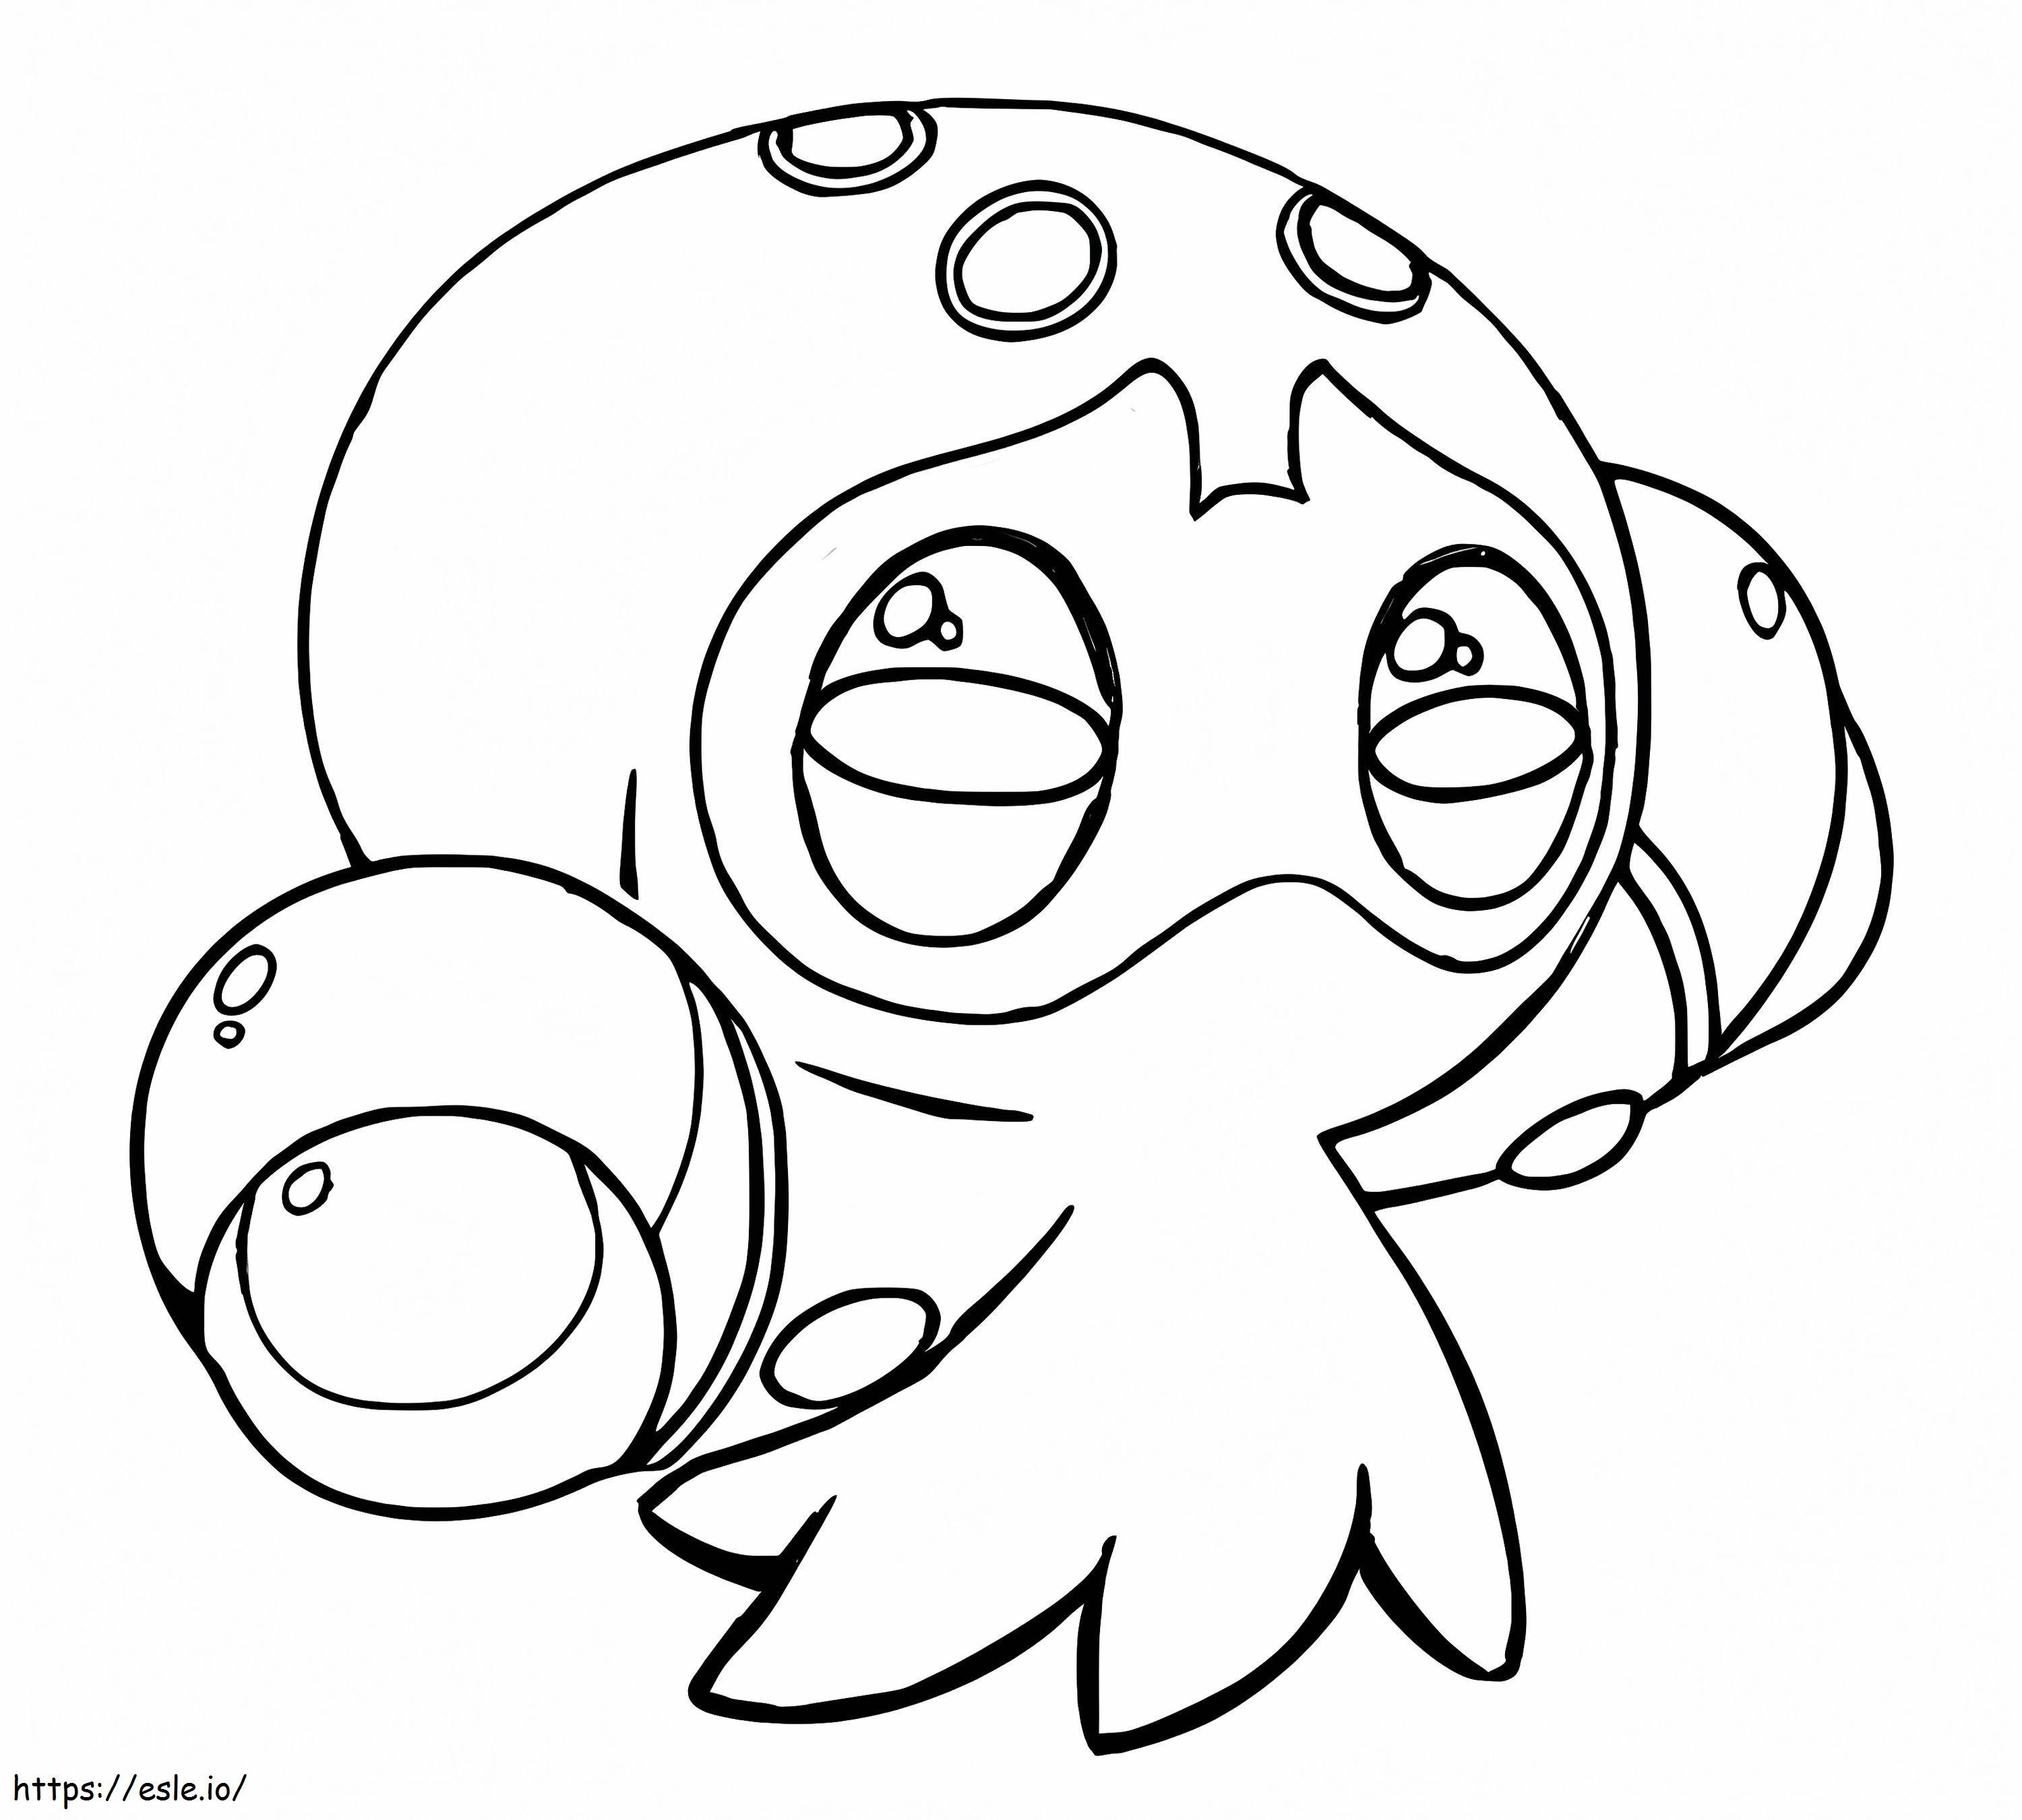 Clobbopus Pokemonu boyama